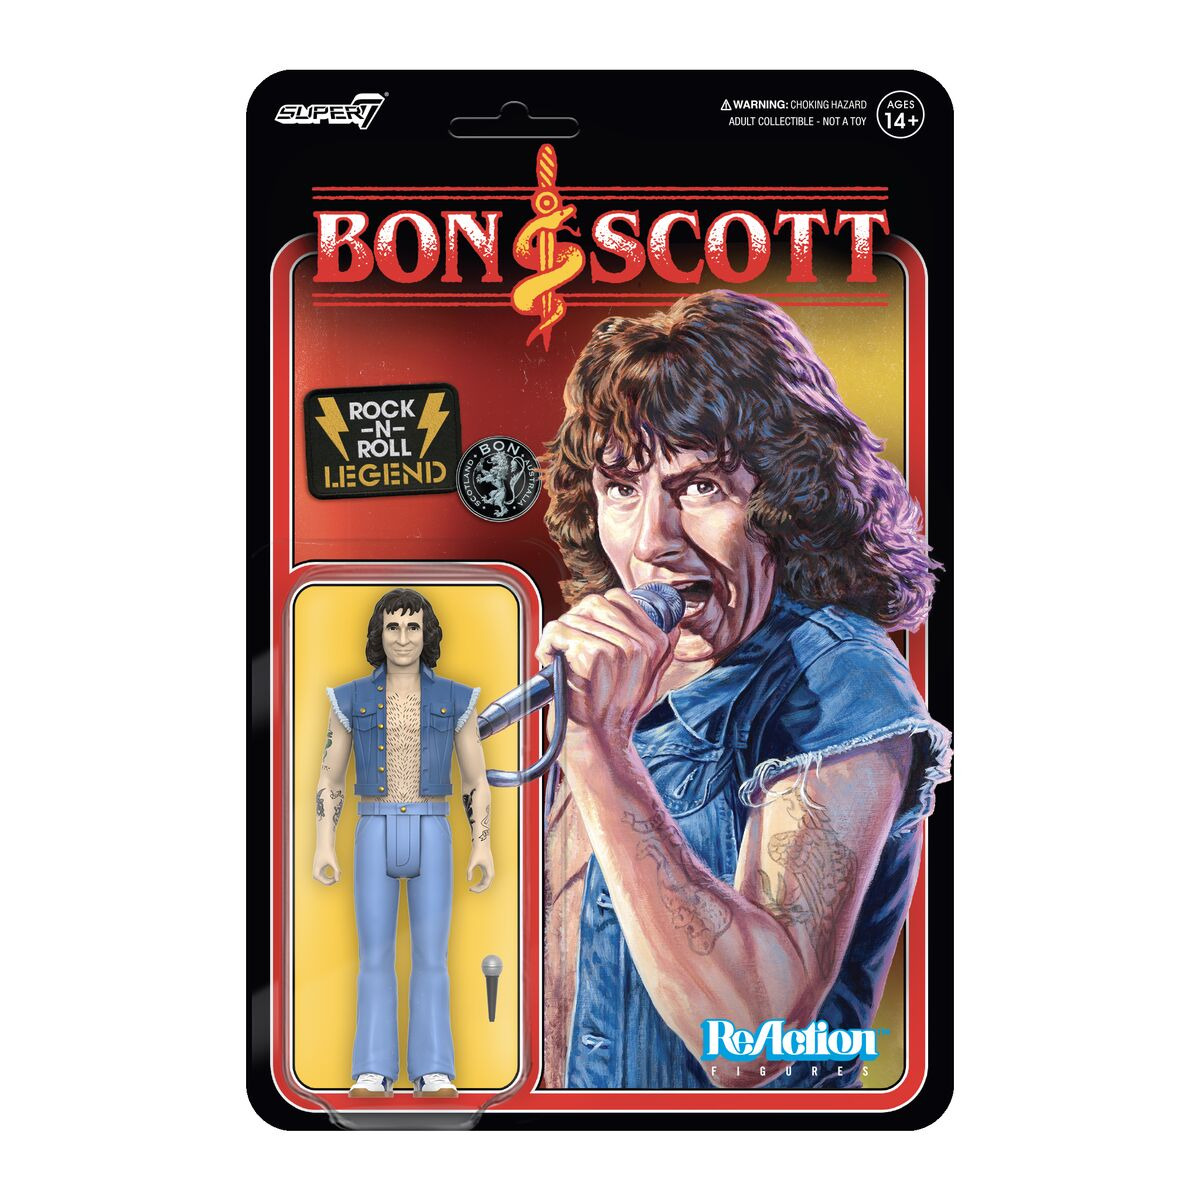 Bon Scott AC/DC Super 7 Reaction Action Figure